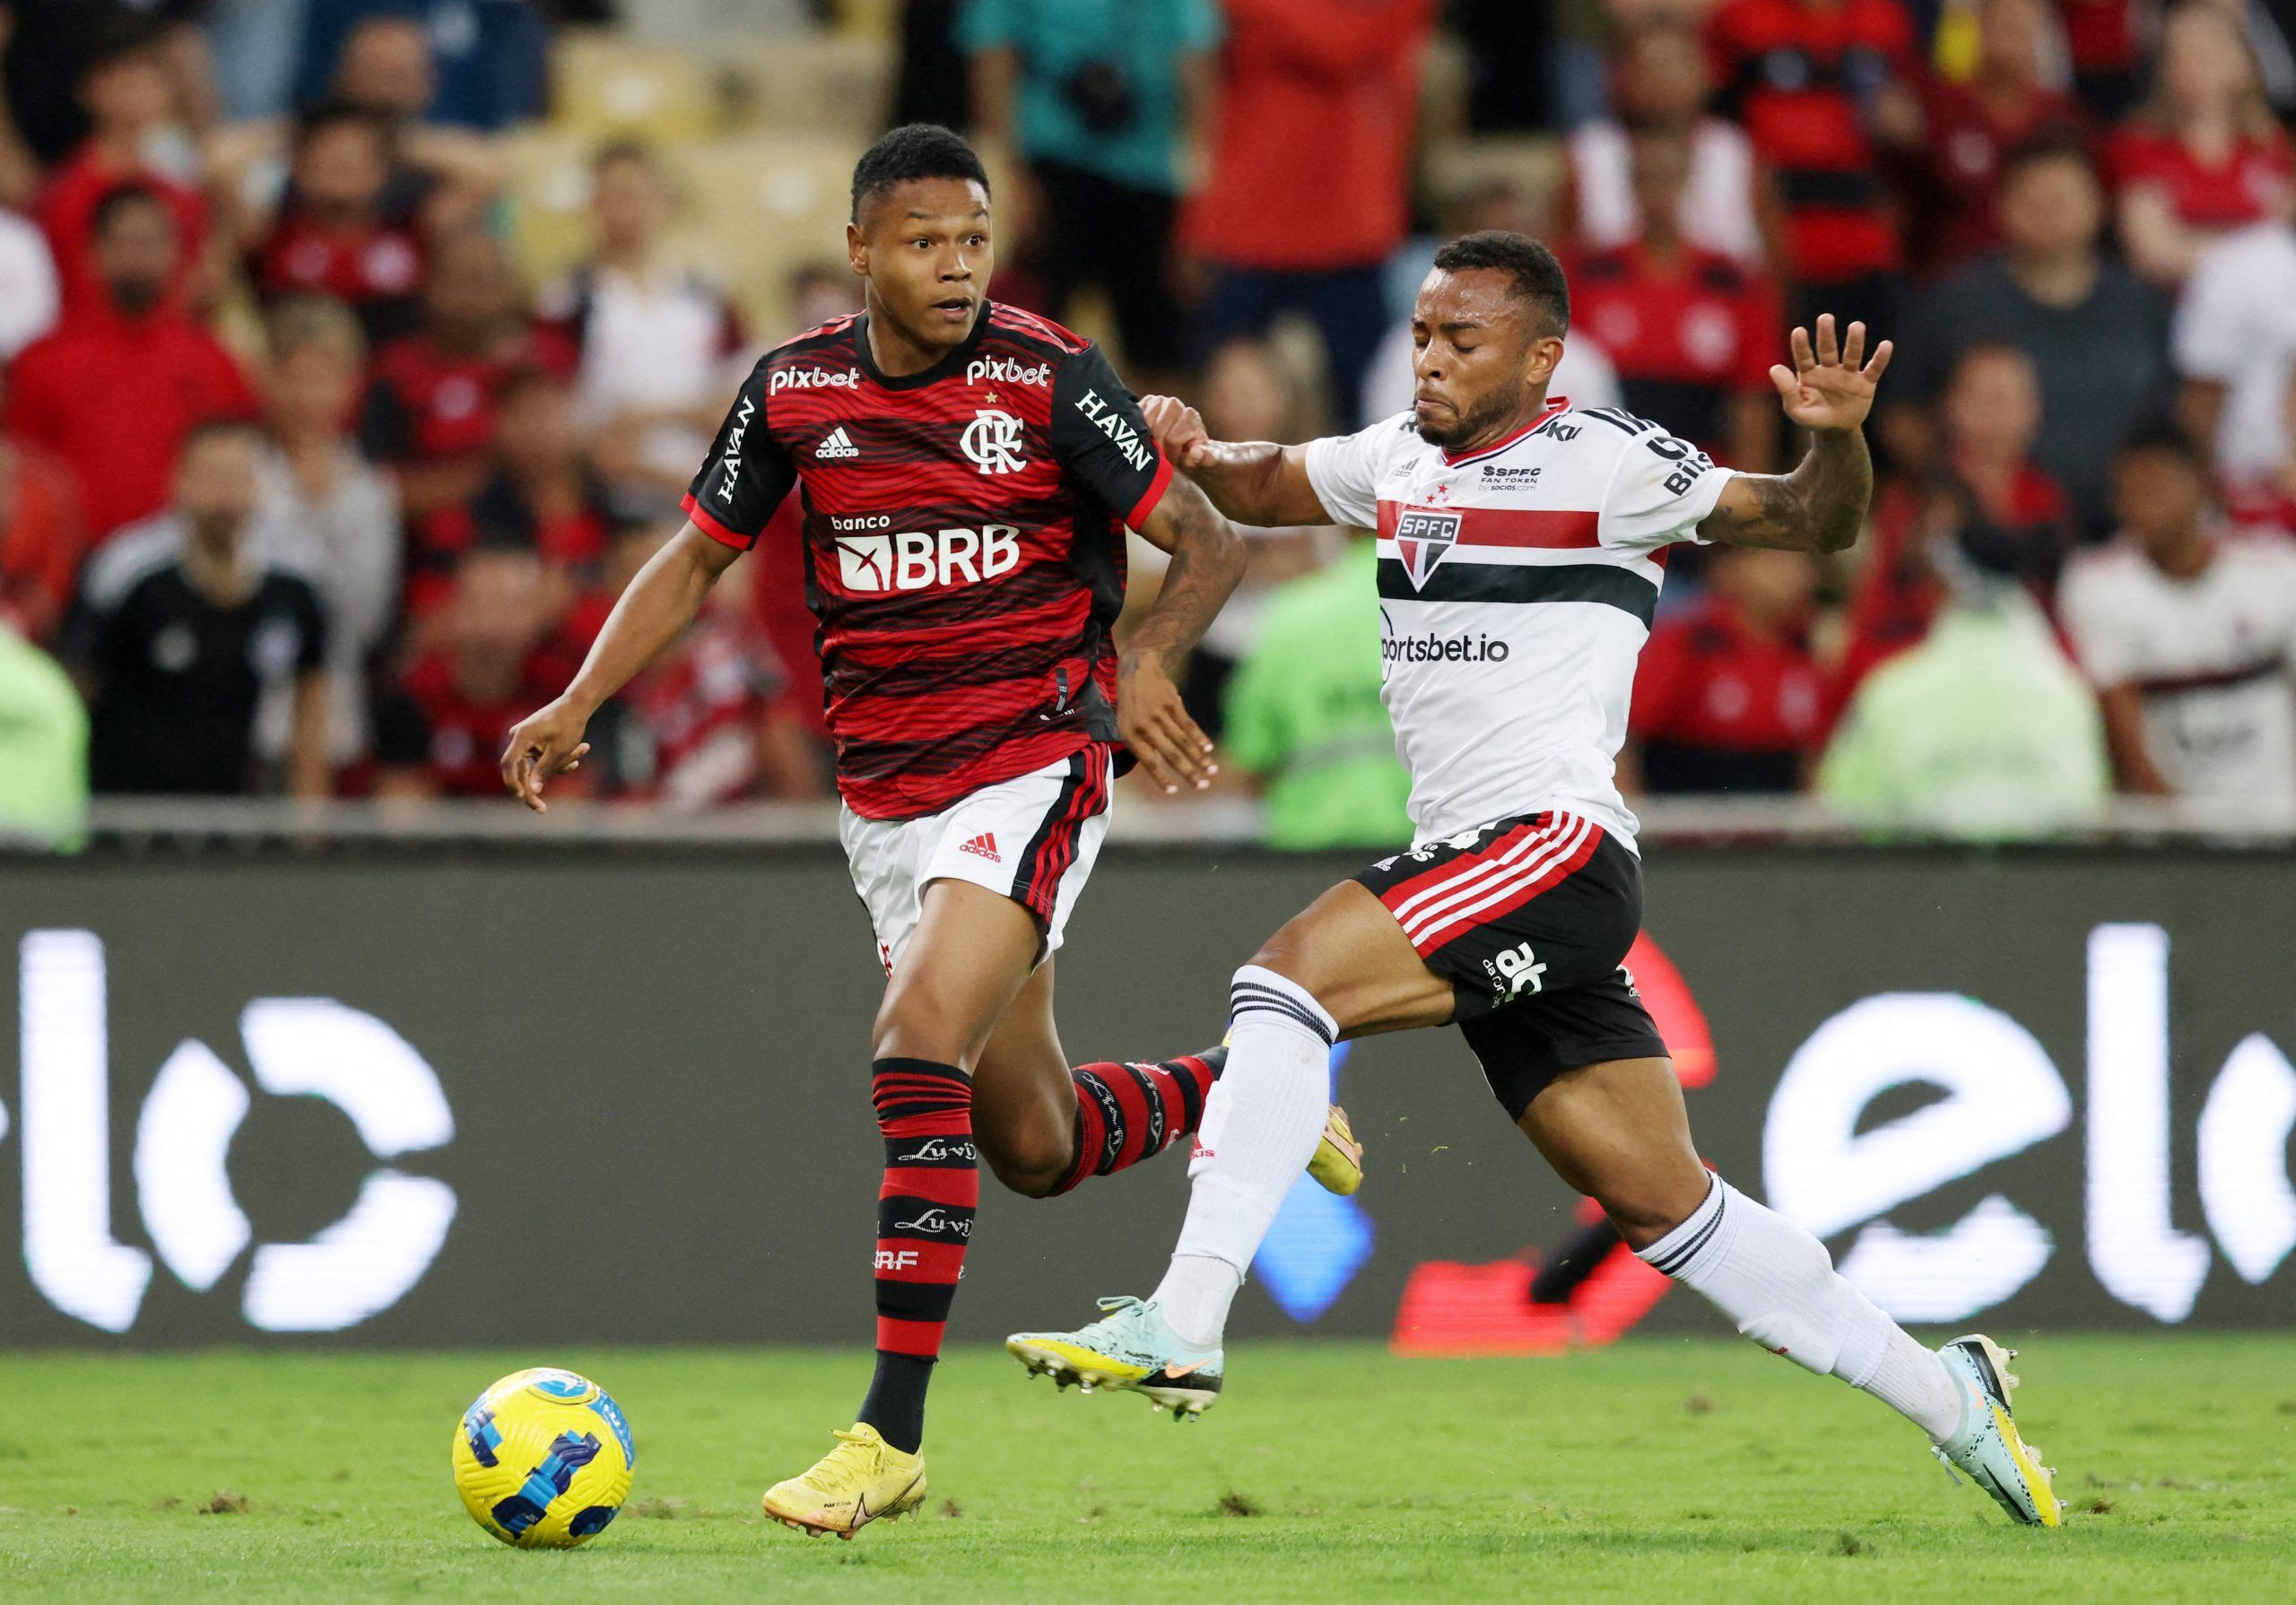 Franca-Flamengo-Newcastle-Howe-Vinicius-Premier-League-transfer